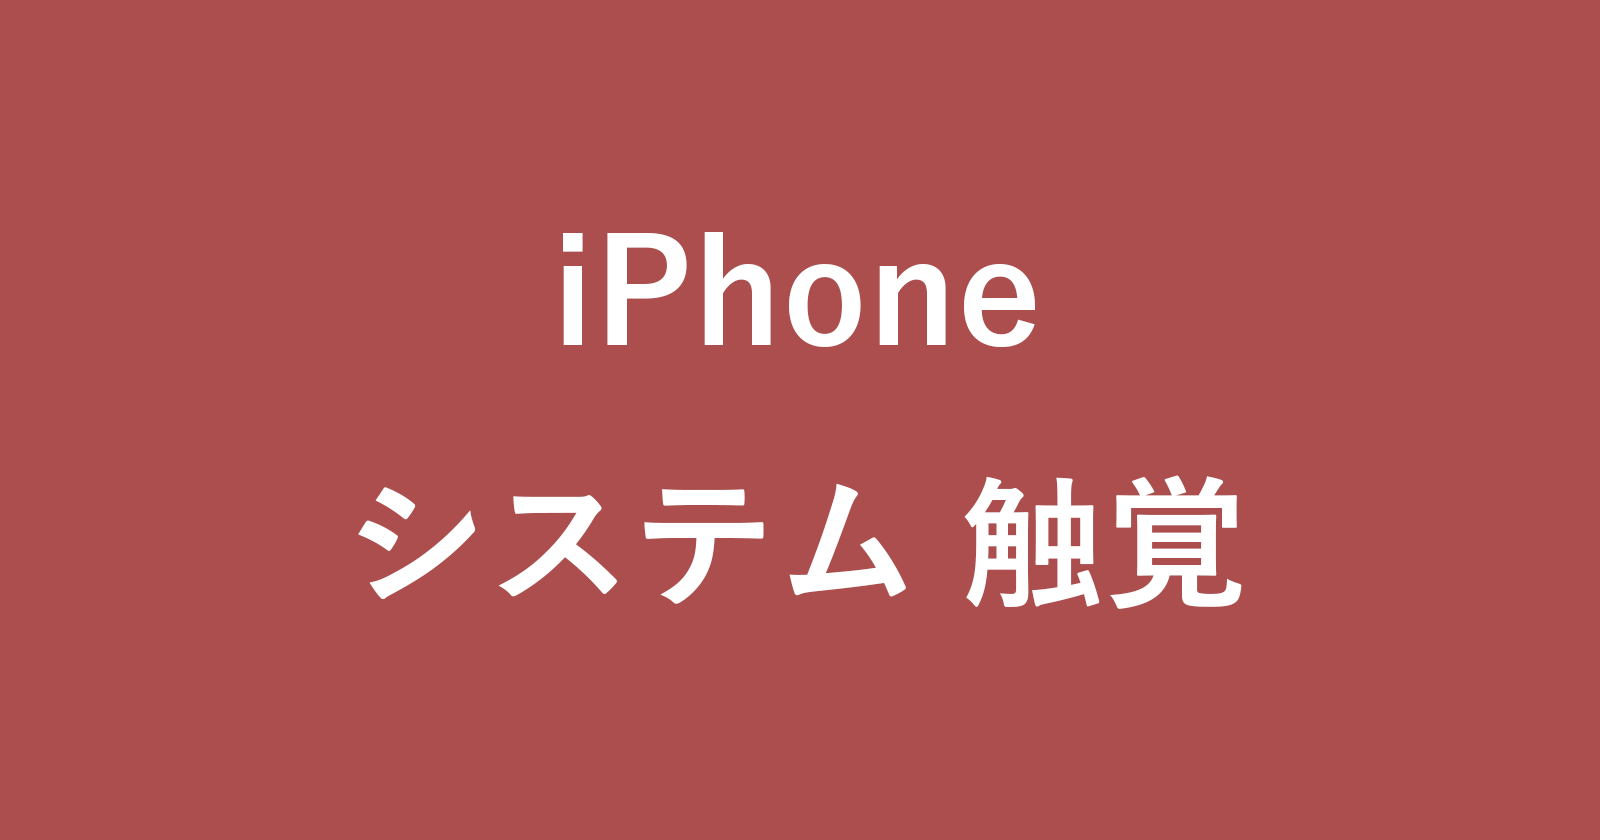 iphone haptics